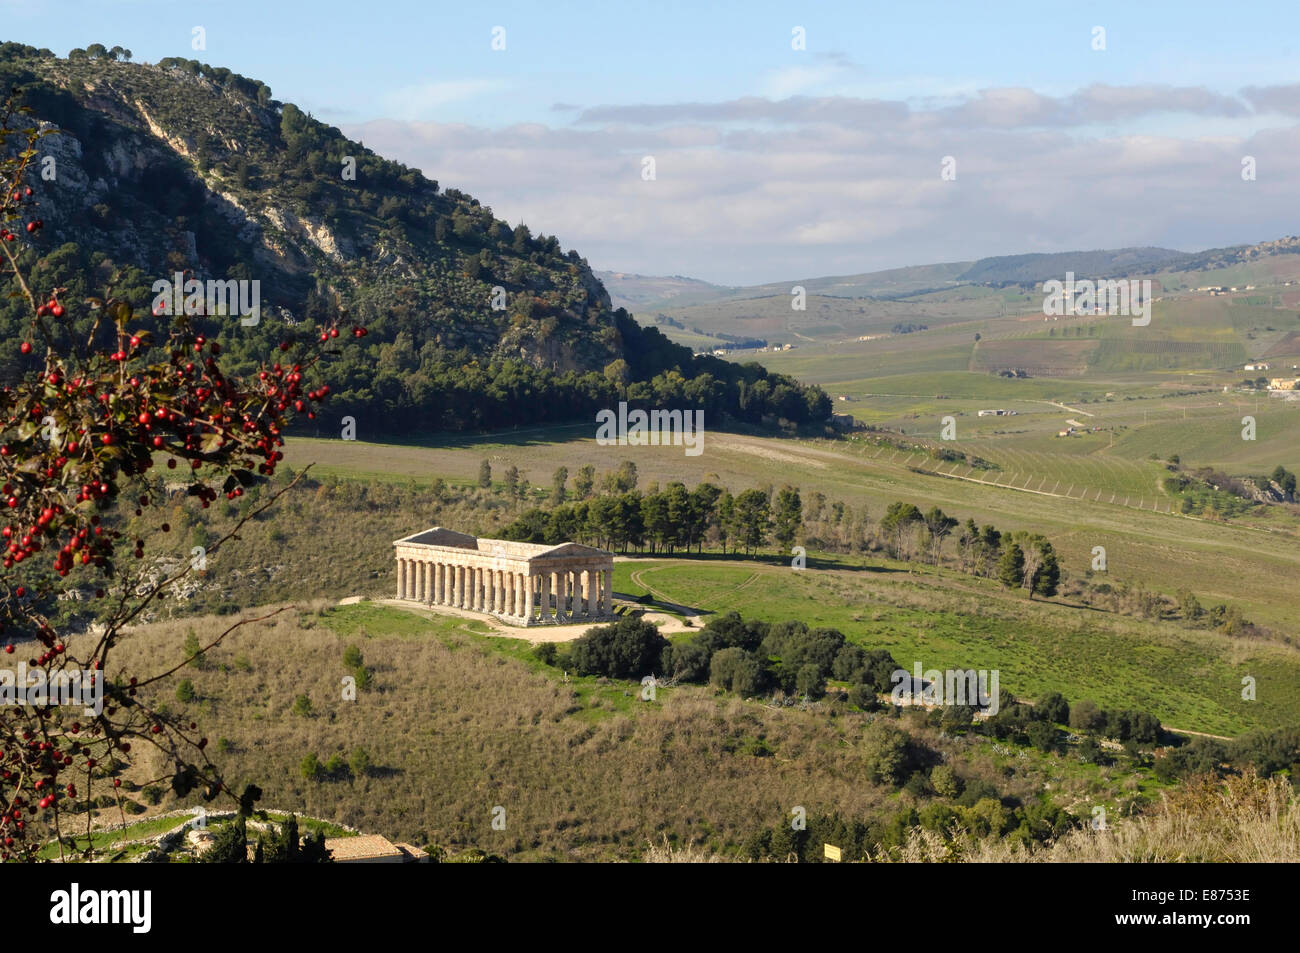 ein Blick auf die antiken dorischen griechischen Hellenic Tempel Ruinen in Segesta von Aeneas Elymern gegründet. Termine ab 426 v. Chr. Sizilien Stockfoto